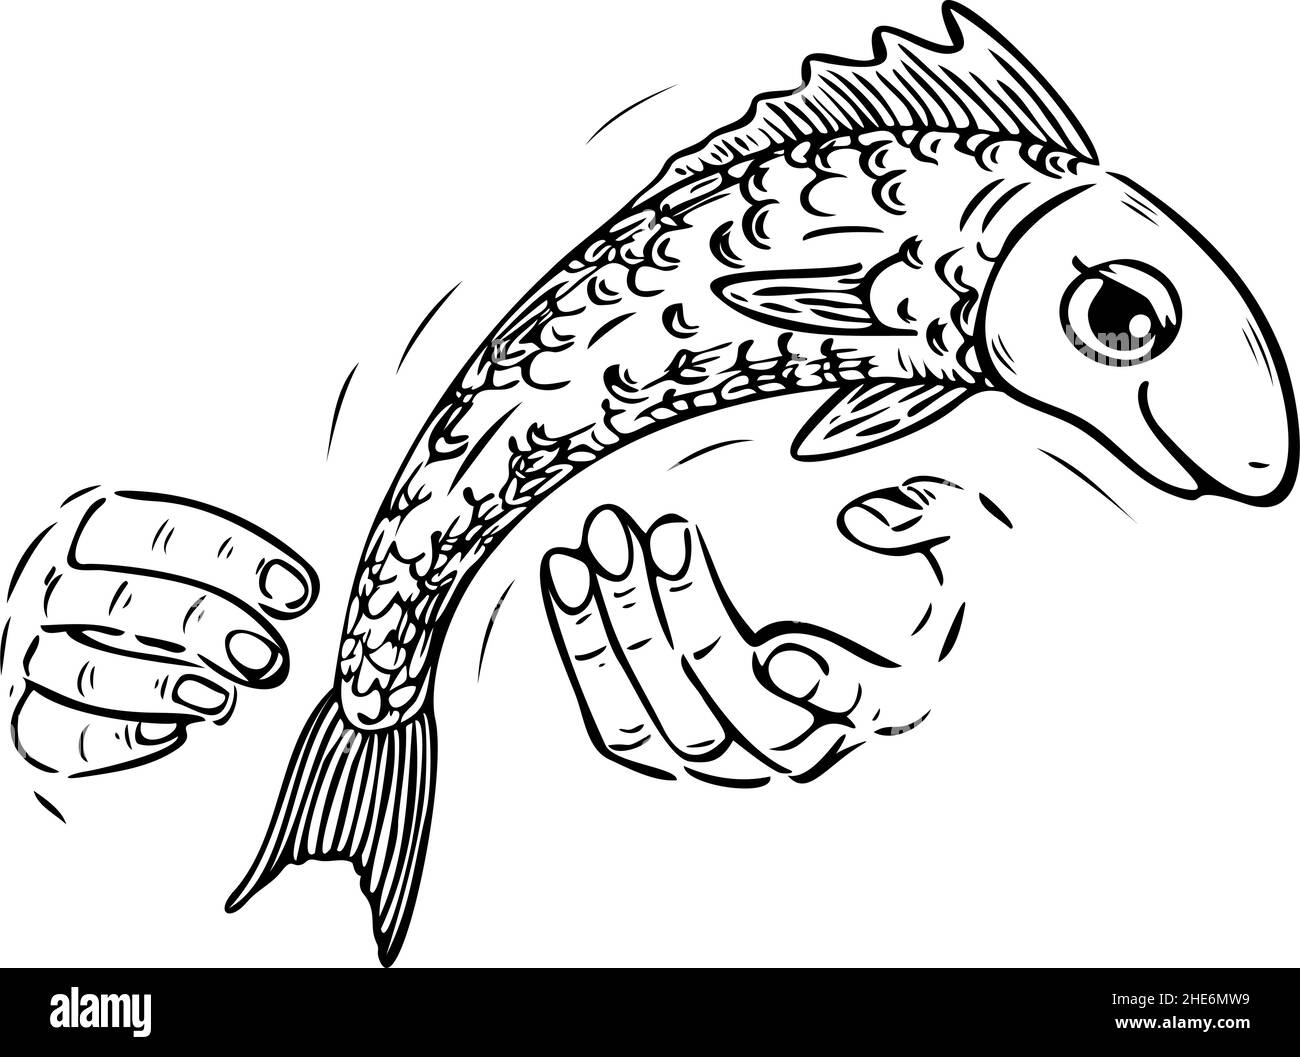 Illustrazione vettoriale con i pesci che scivolano dalle mani del pescatore. Illustrazione in bianco e nero di pesci fuoriuscenti. Illustrazione Vettoriale